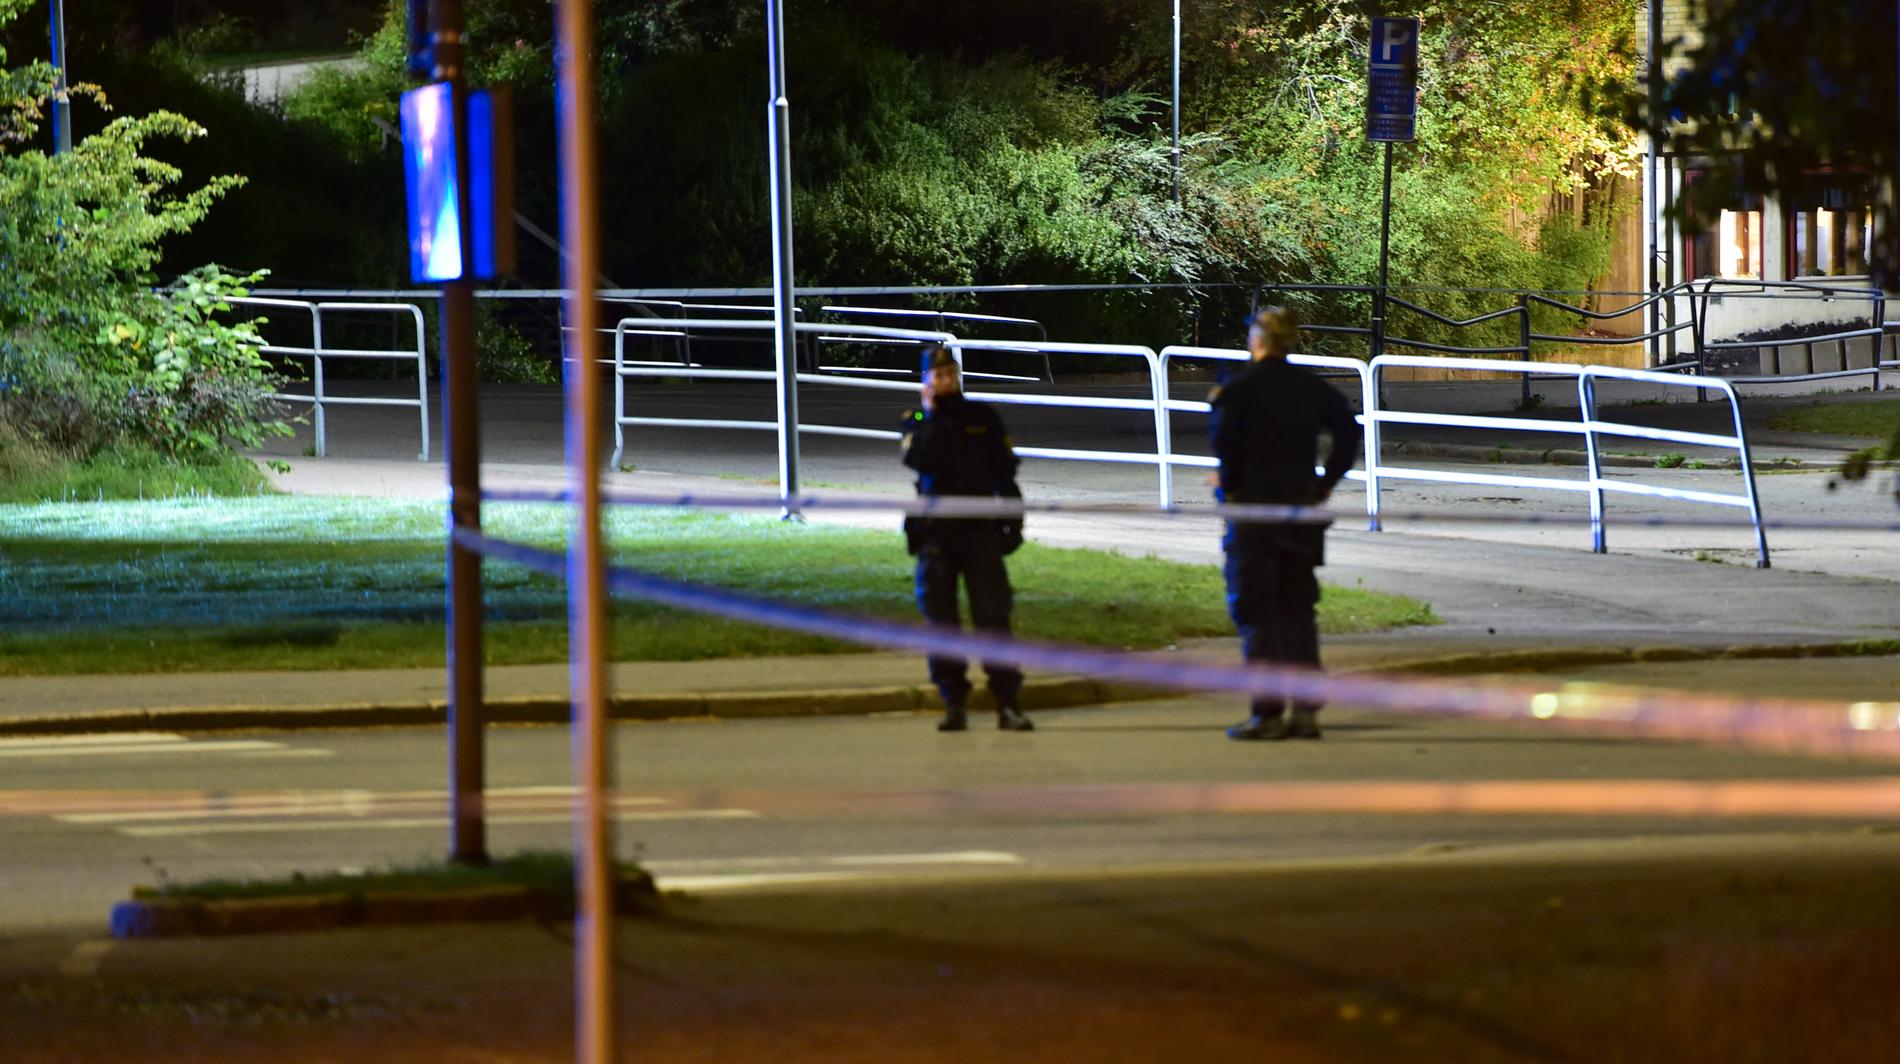 Cirka fyra timmar senare sköts en 21-årig man till döds vid en skola i Brandkärr, Nyköping.